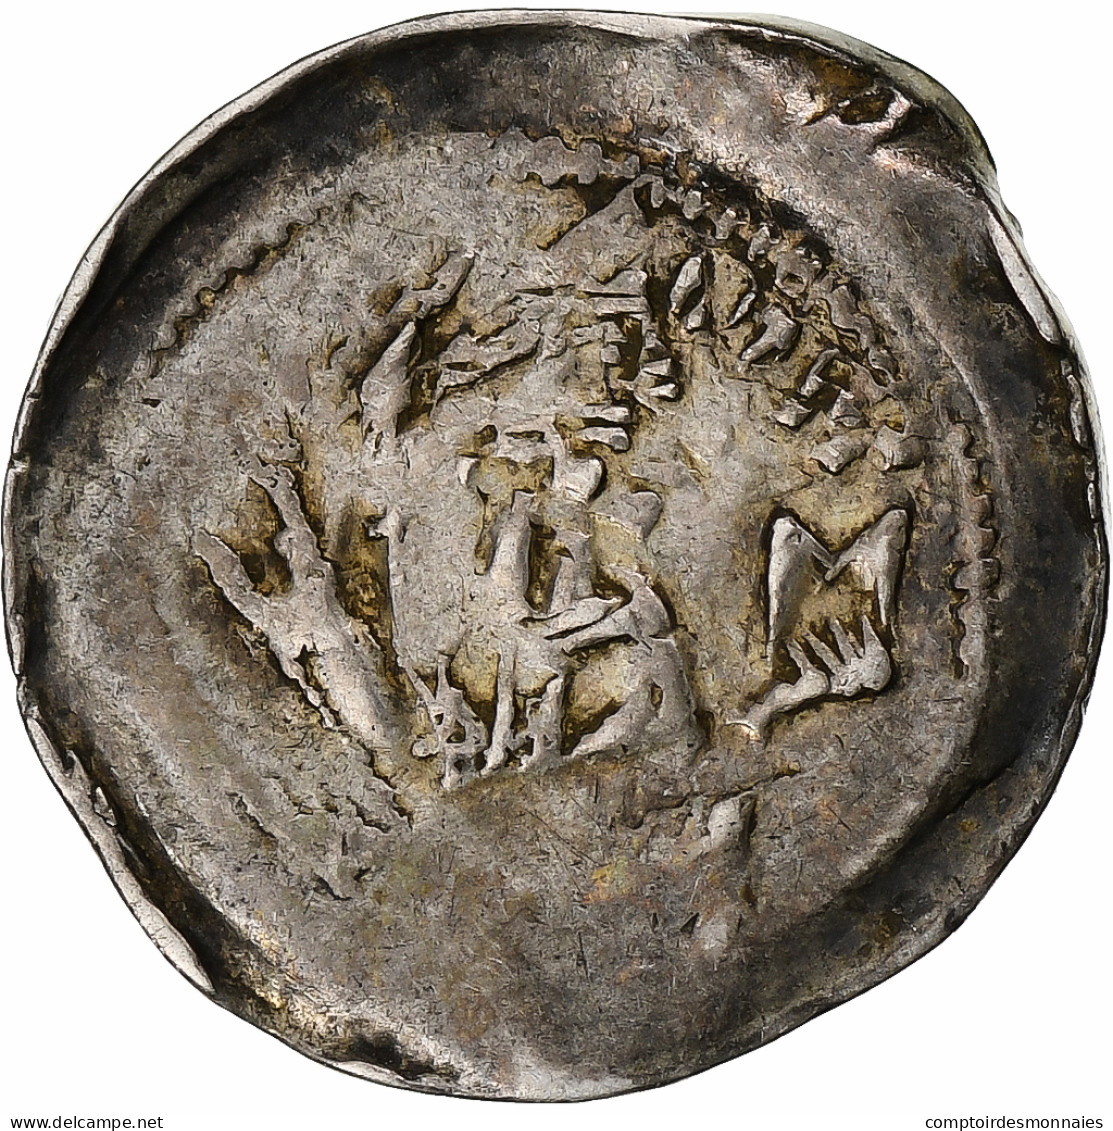 Archevêché De Trèves, Arnold II D'Isembourg, Denier, 1242-1259, Trèves, Argent - Groschen & Andere Kleinmünzen